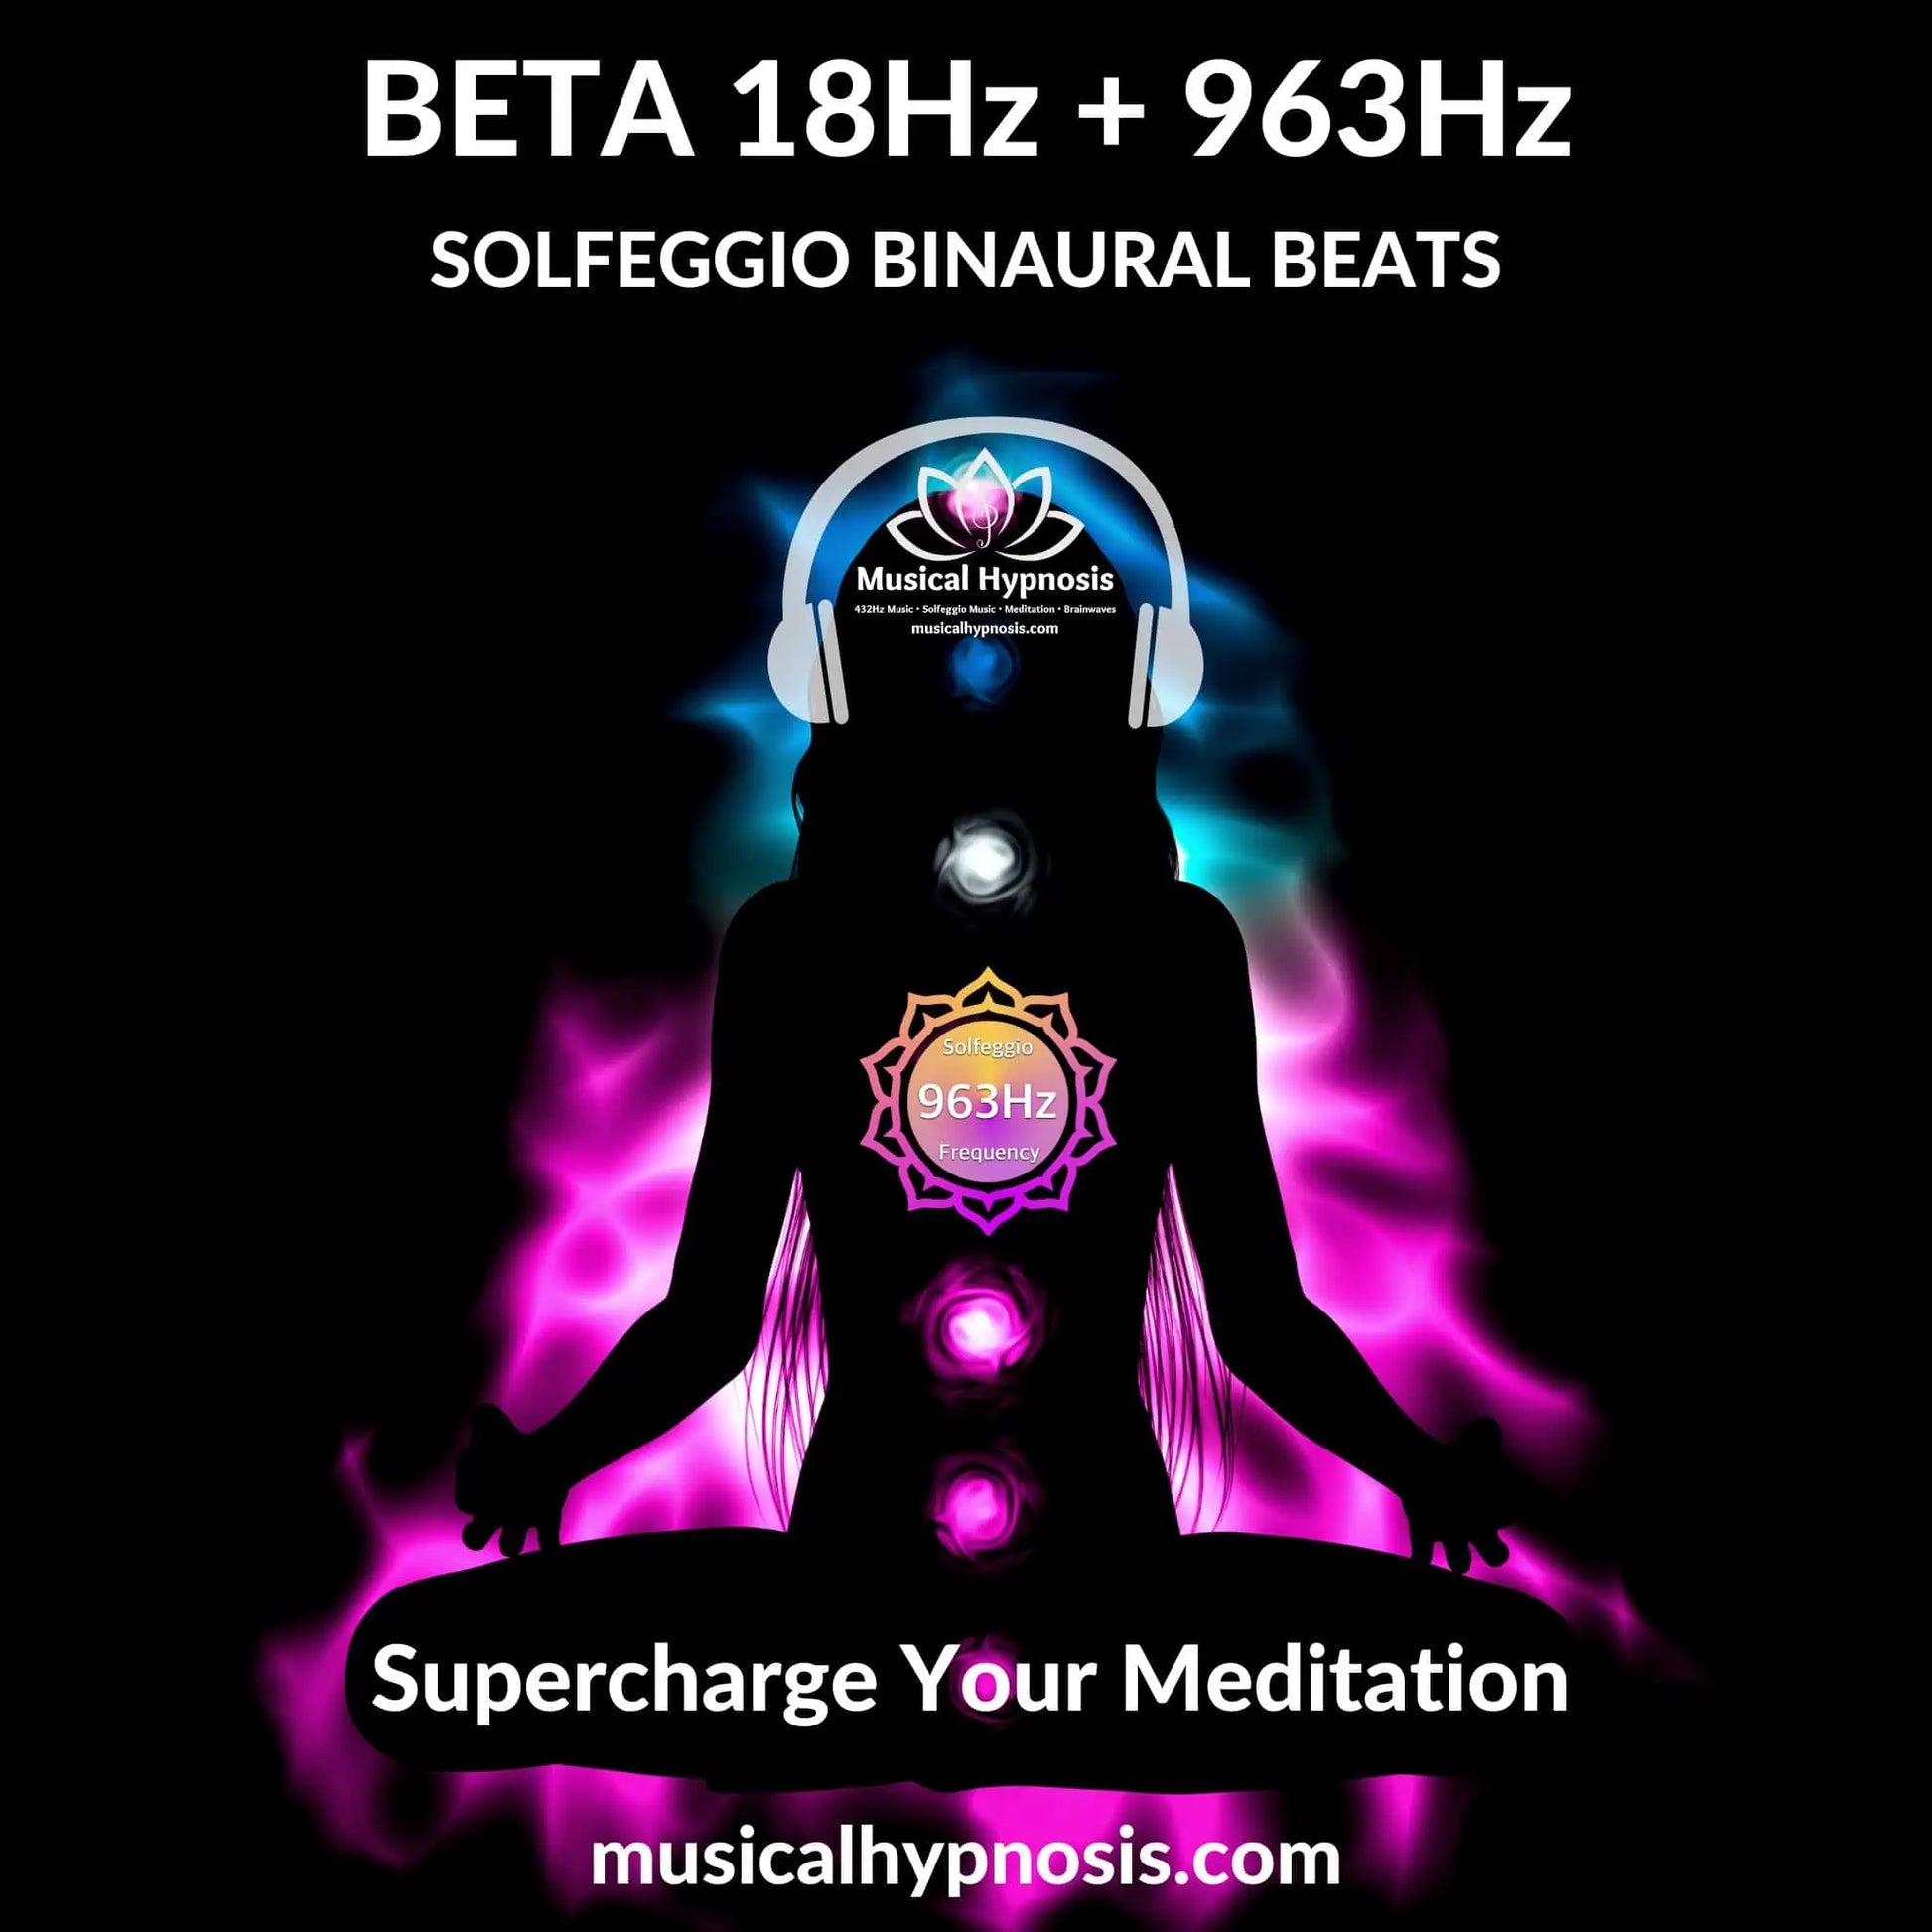 Beta 18Hz and 963Hz Solfeggio Binaural Beats | 30 minutes